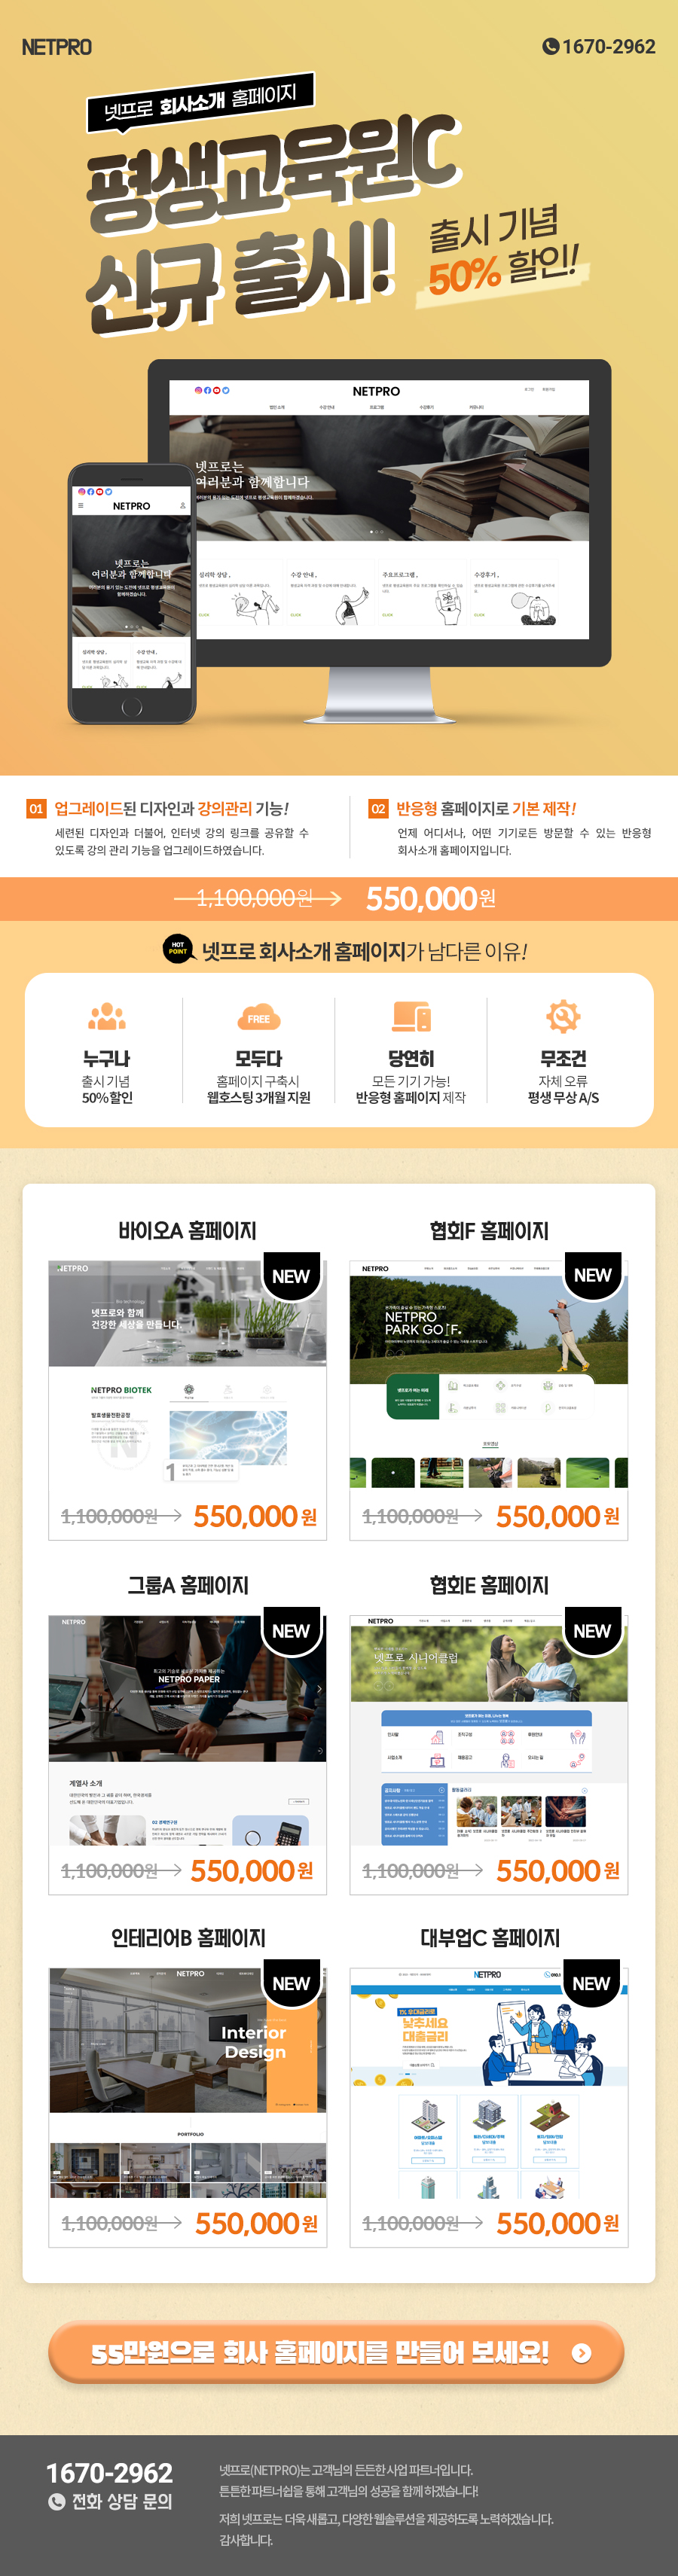 넷프로 평생교육원C 홈페이지 신규 출시!